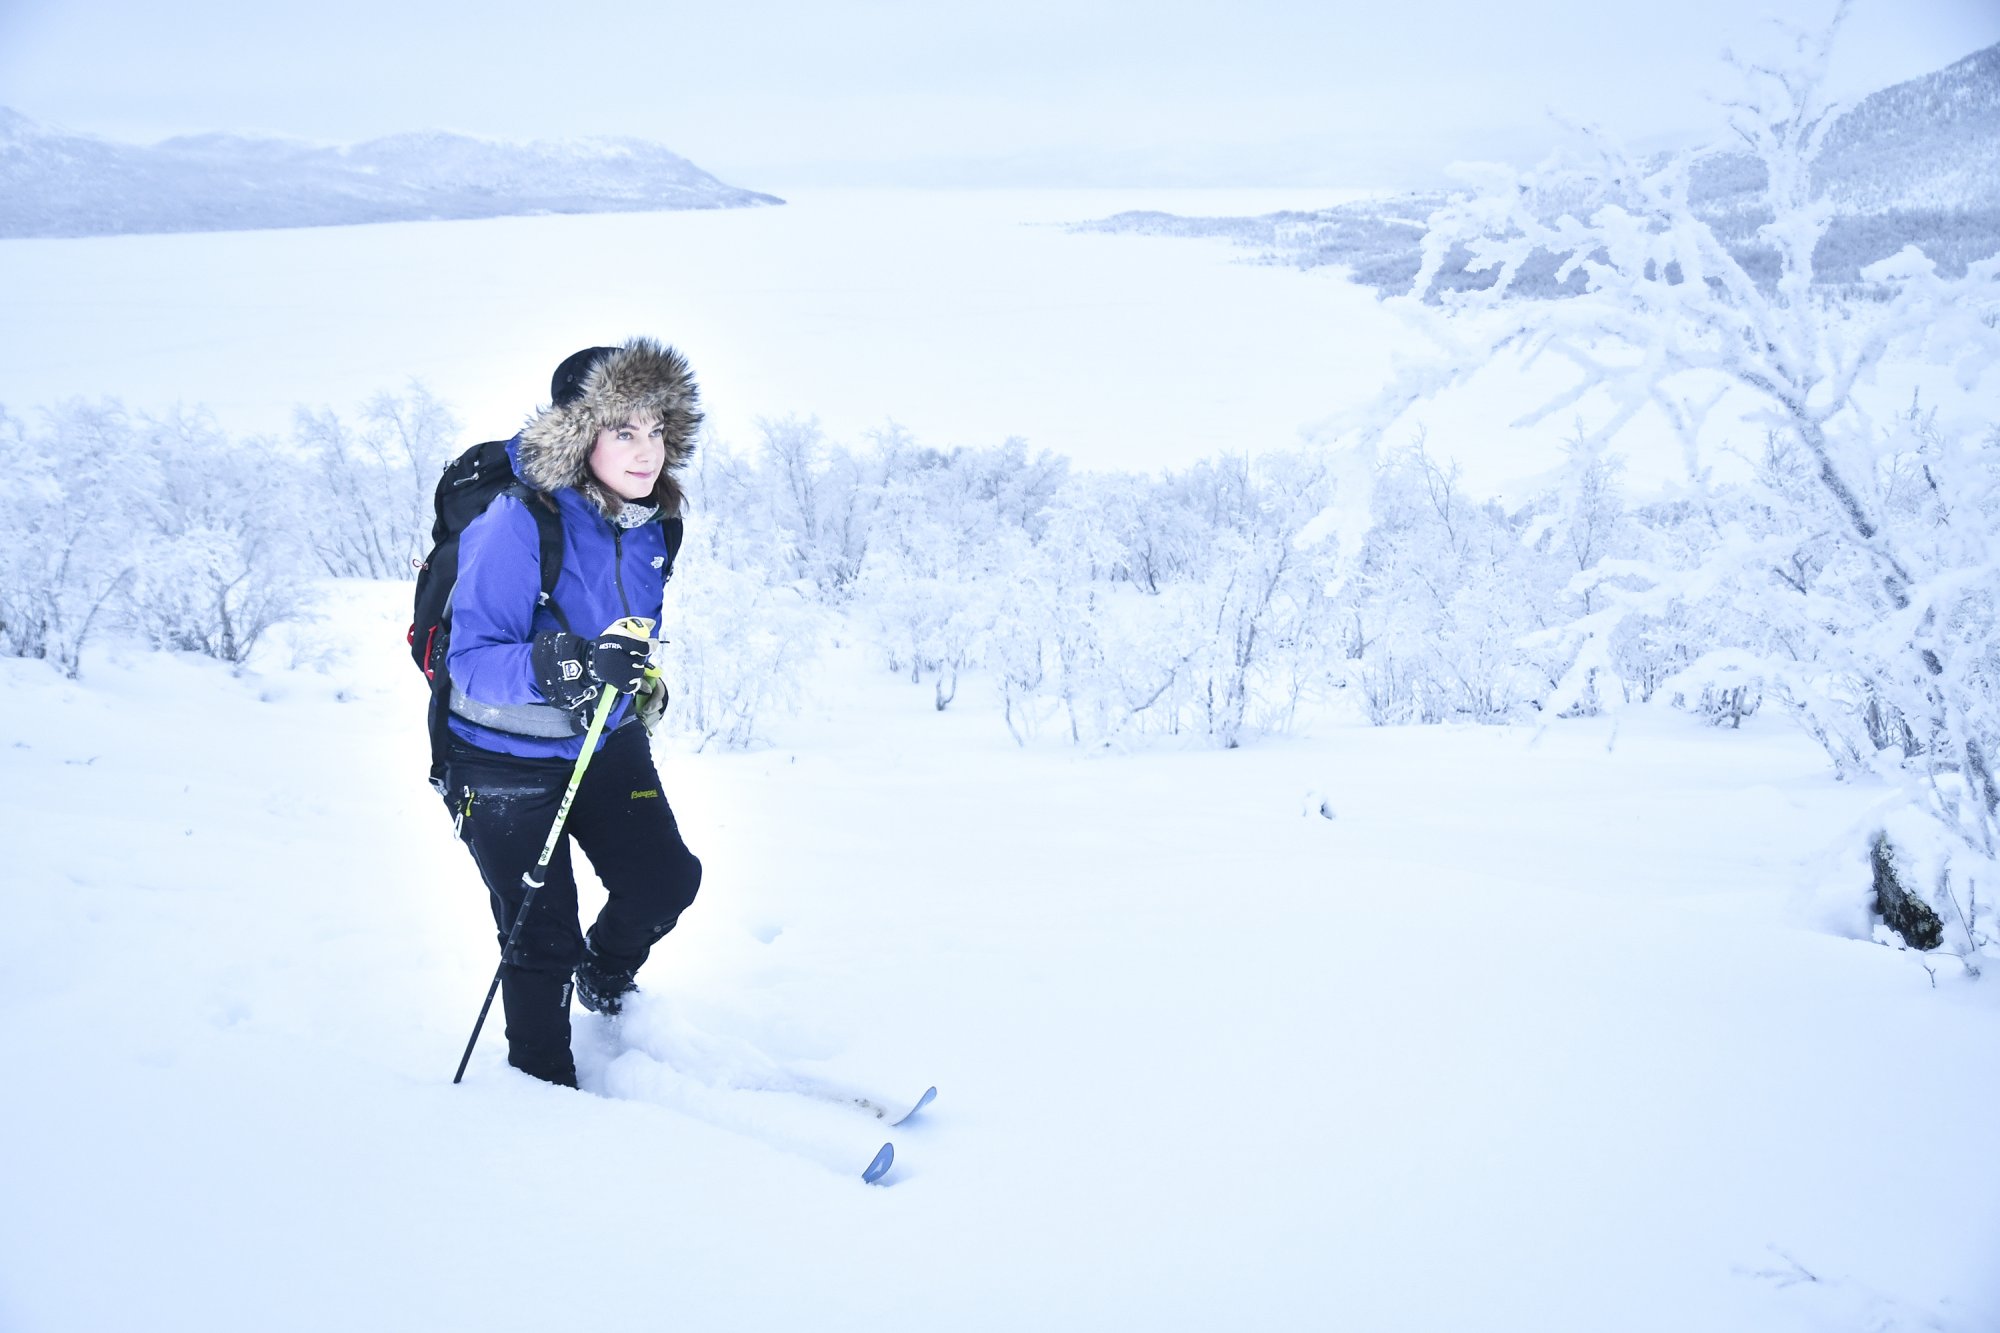 Anniina hiihtää tunturisuksilla karvalakki päässään hangessa lumisessa maisemassa